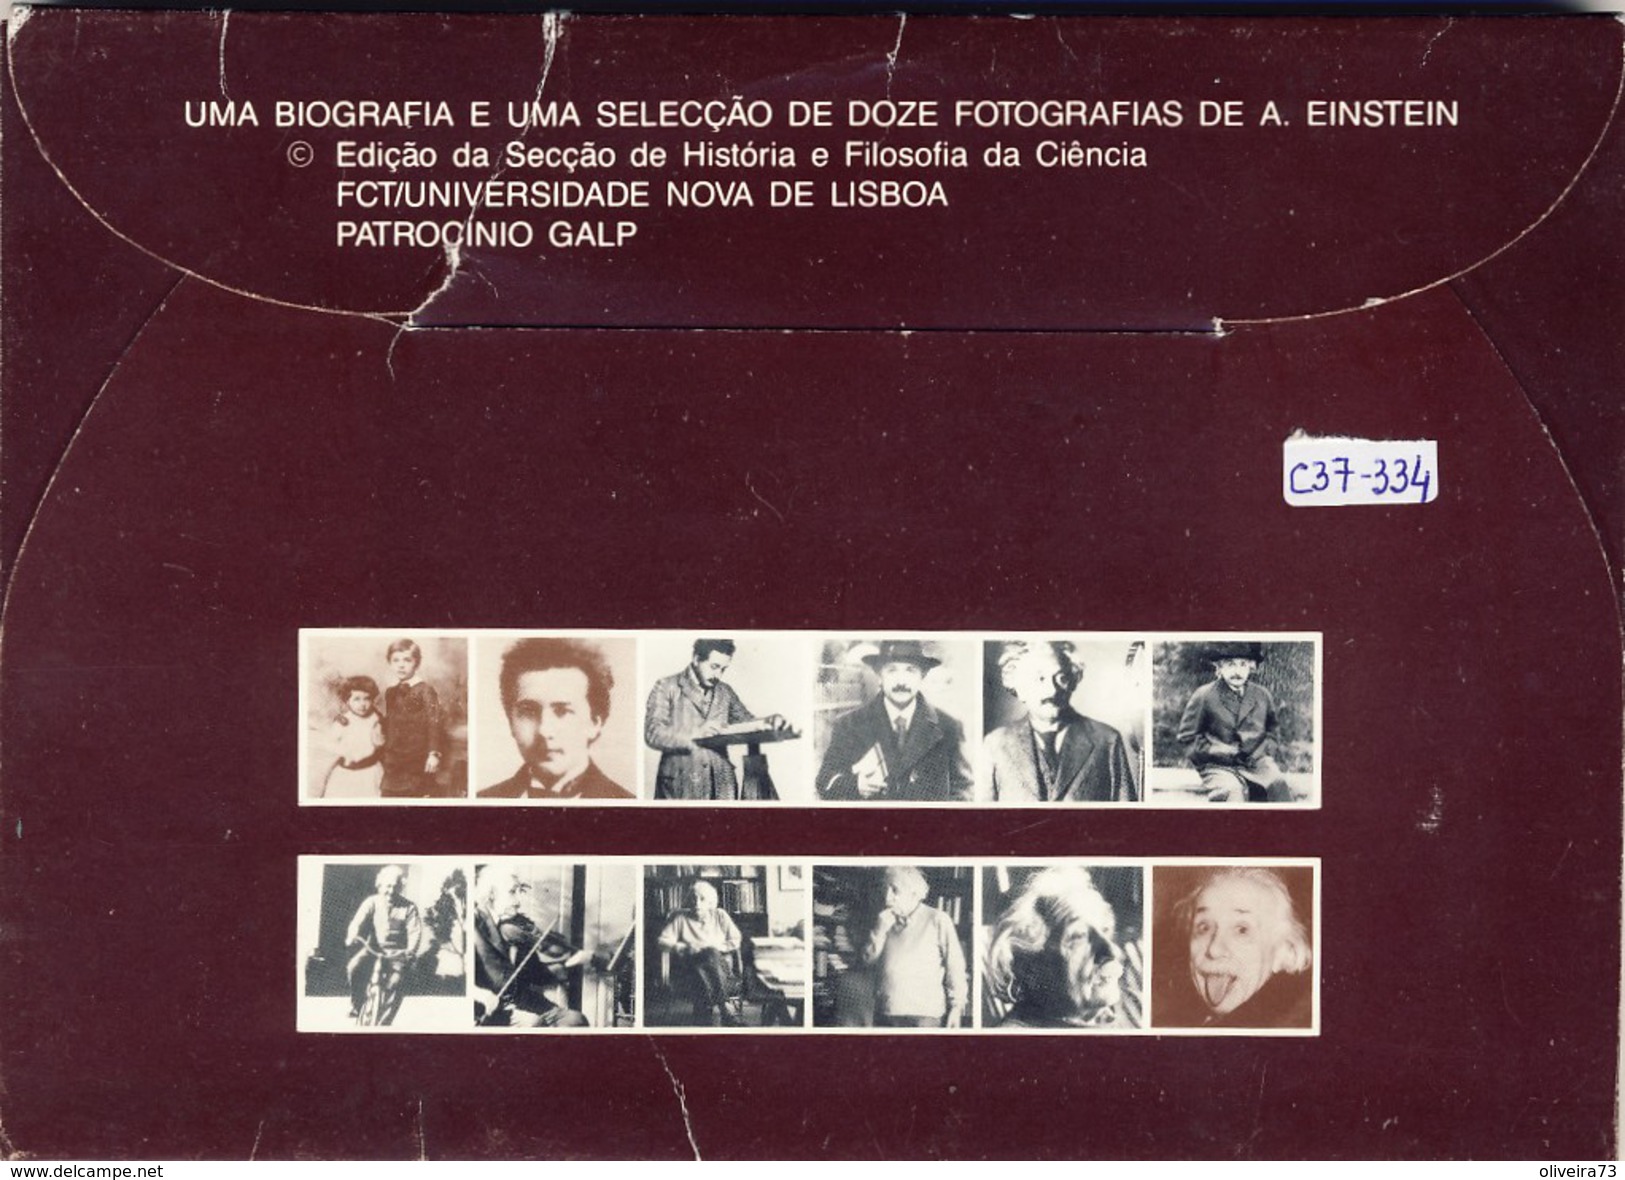 A. EINSTEIN, SELECÇÃO DE 12 FOTOGRAFIAS, 17 x 12 + Nota Biográfica, 15 Scans, PORTUGAL